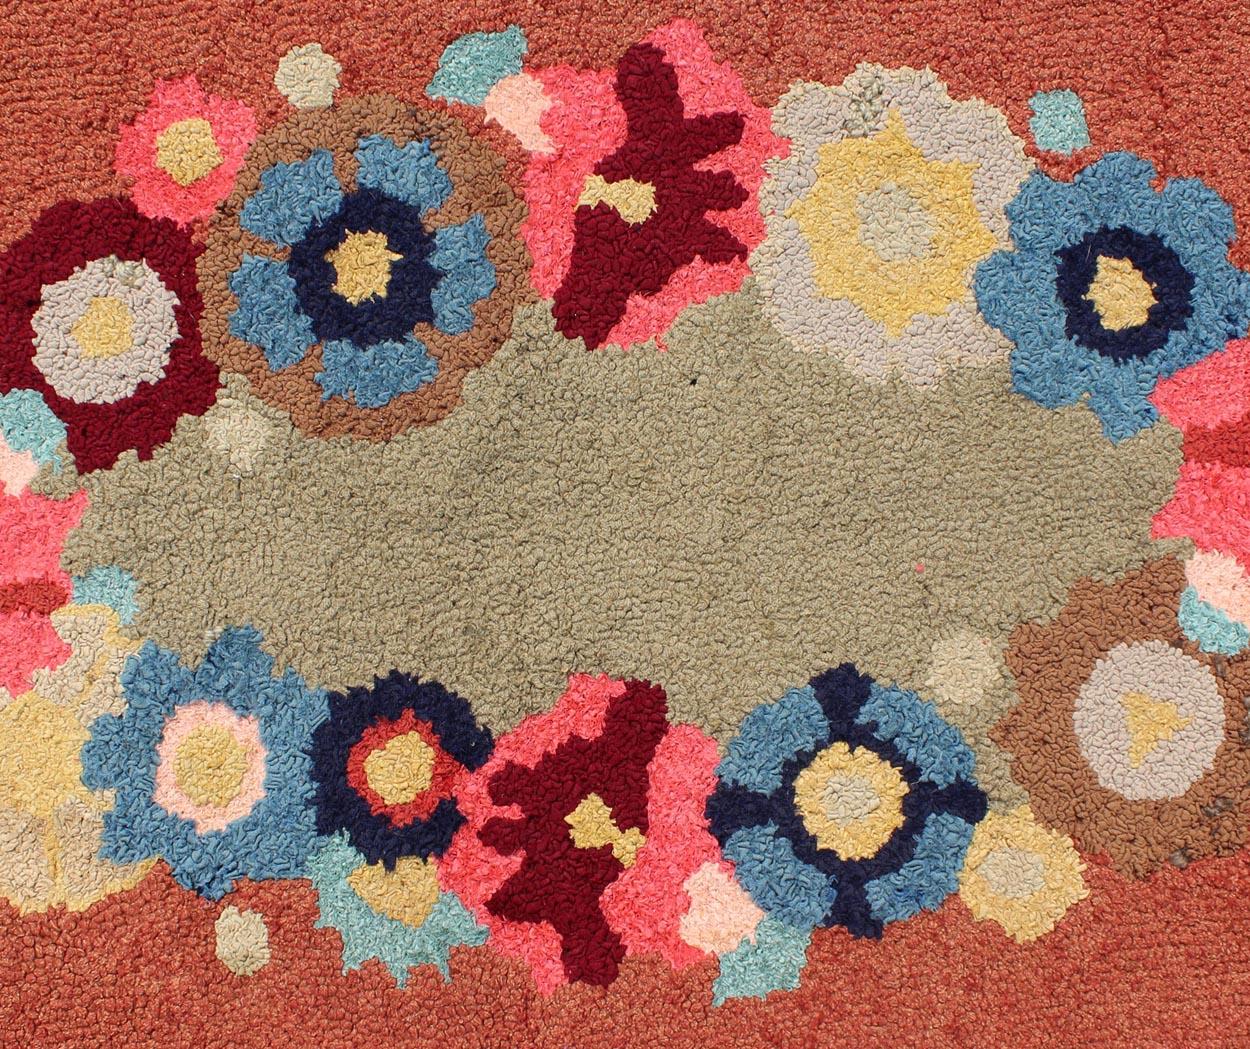 Ovaler amerikanischer Knüpfteppich mit großem Blumenmuster, Teppich S12-1206, Herkunftsland / Art: Vereinigte Staaten / Häkelteppich, um 1950

Dieser farbenfrohe amerikanische Hakenteppich zeigt eine Vielzahl von Ranken und blühenden Blumen in